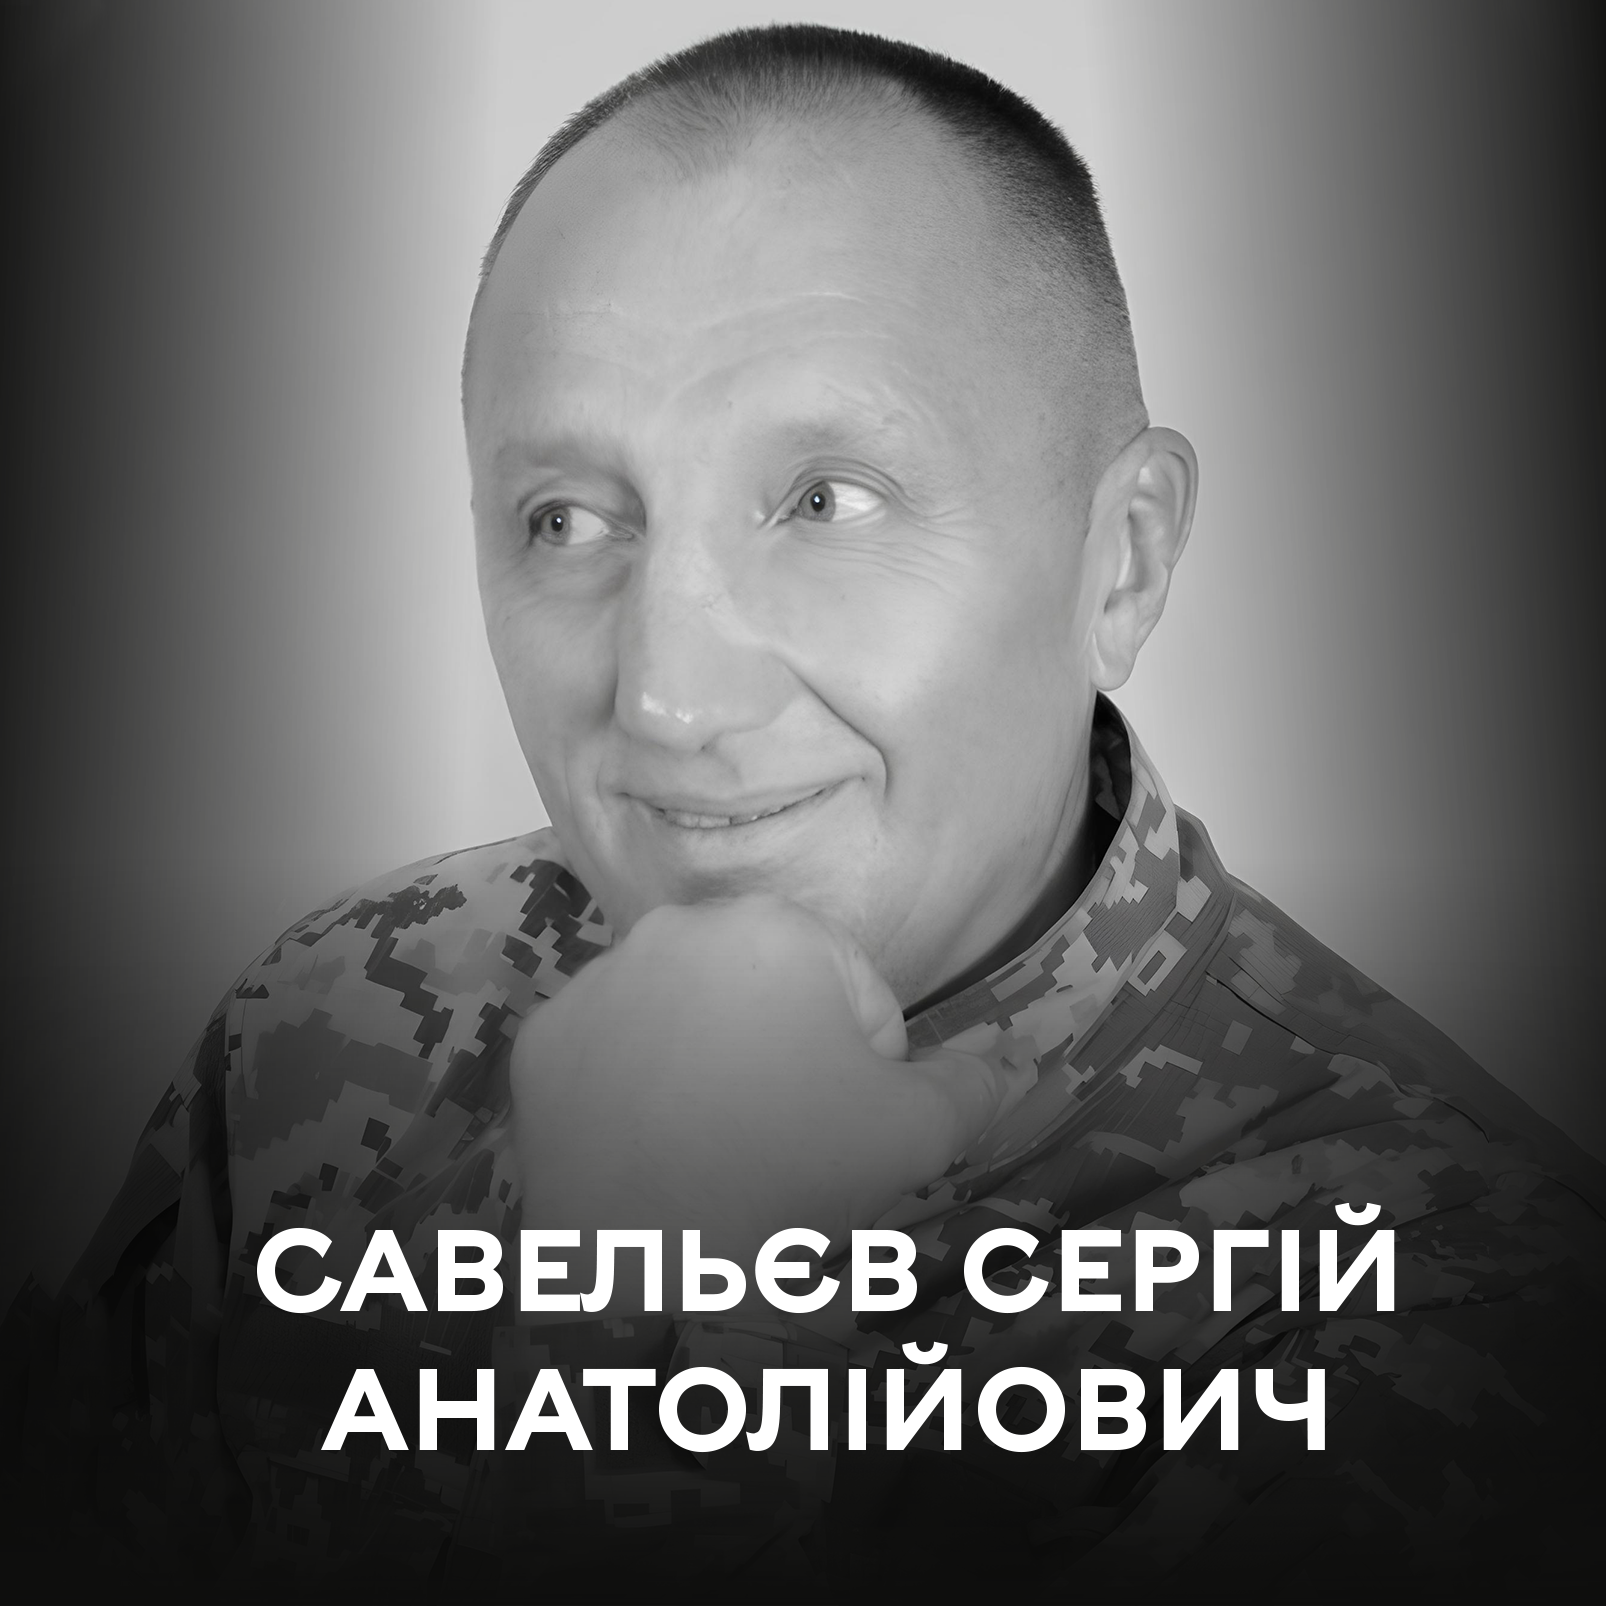 Активно волонтерив з початку війни…2 липня Вінниця віддає останні почесті воїну Сергію Савельєву…Вічна слава Герою!